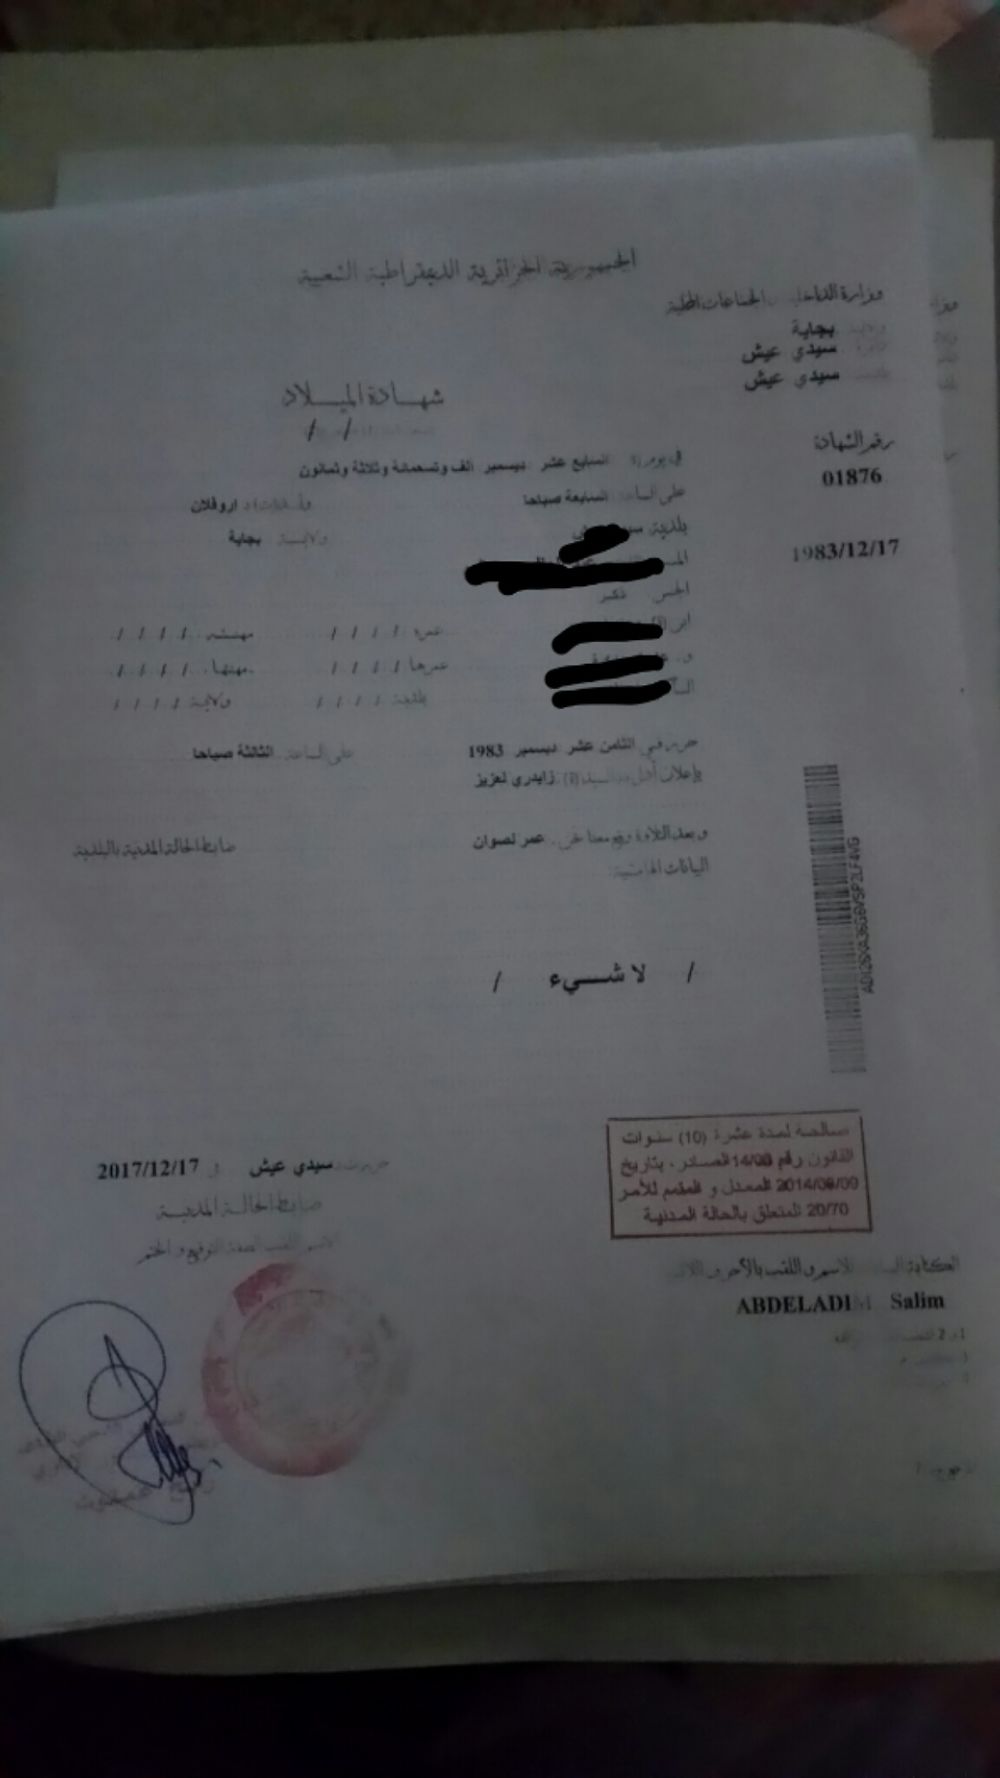 Re: Certificat de capacité à mariage (ccam) - formalités pour se marier en Algerie - salim06